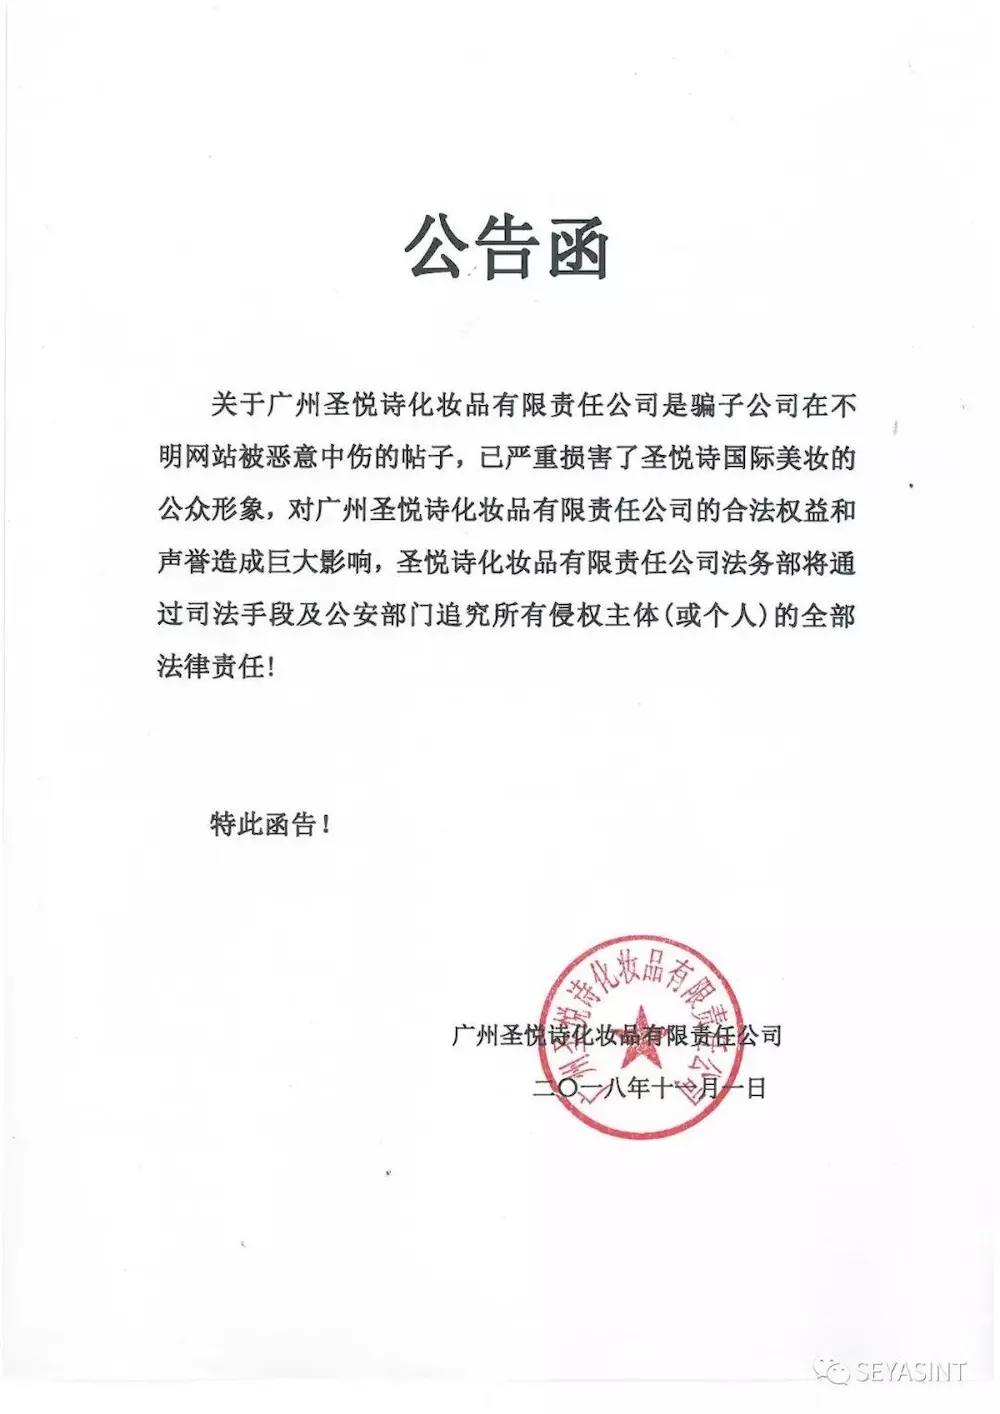 關于廣州圣悅詩是騙子公司的公告函